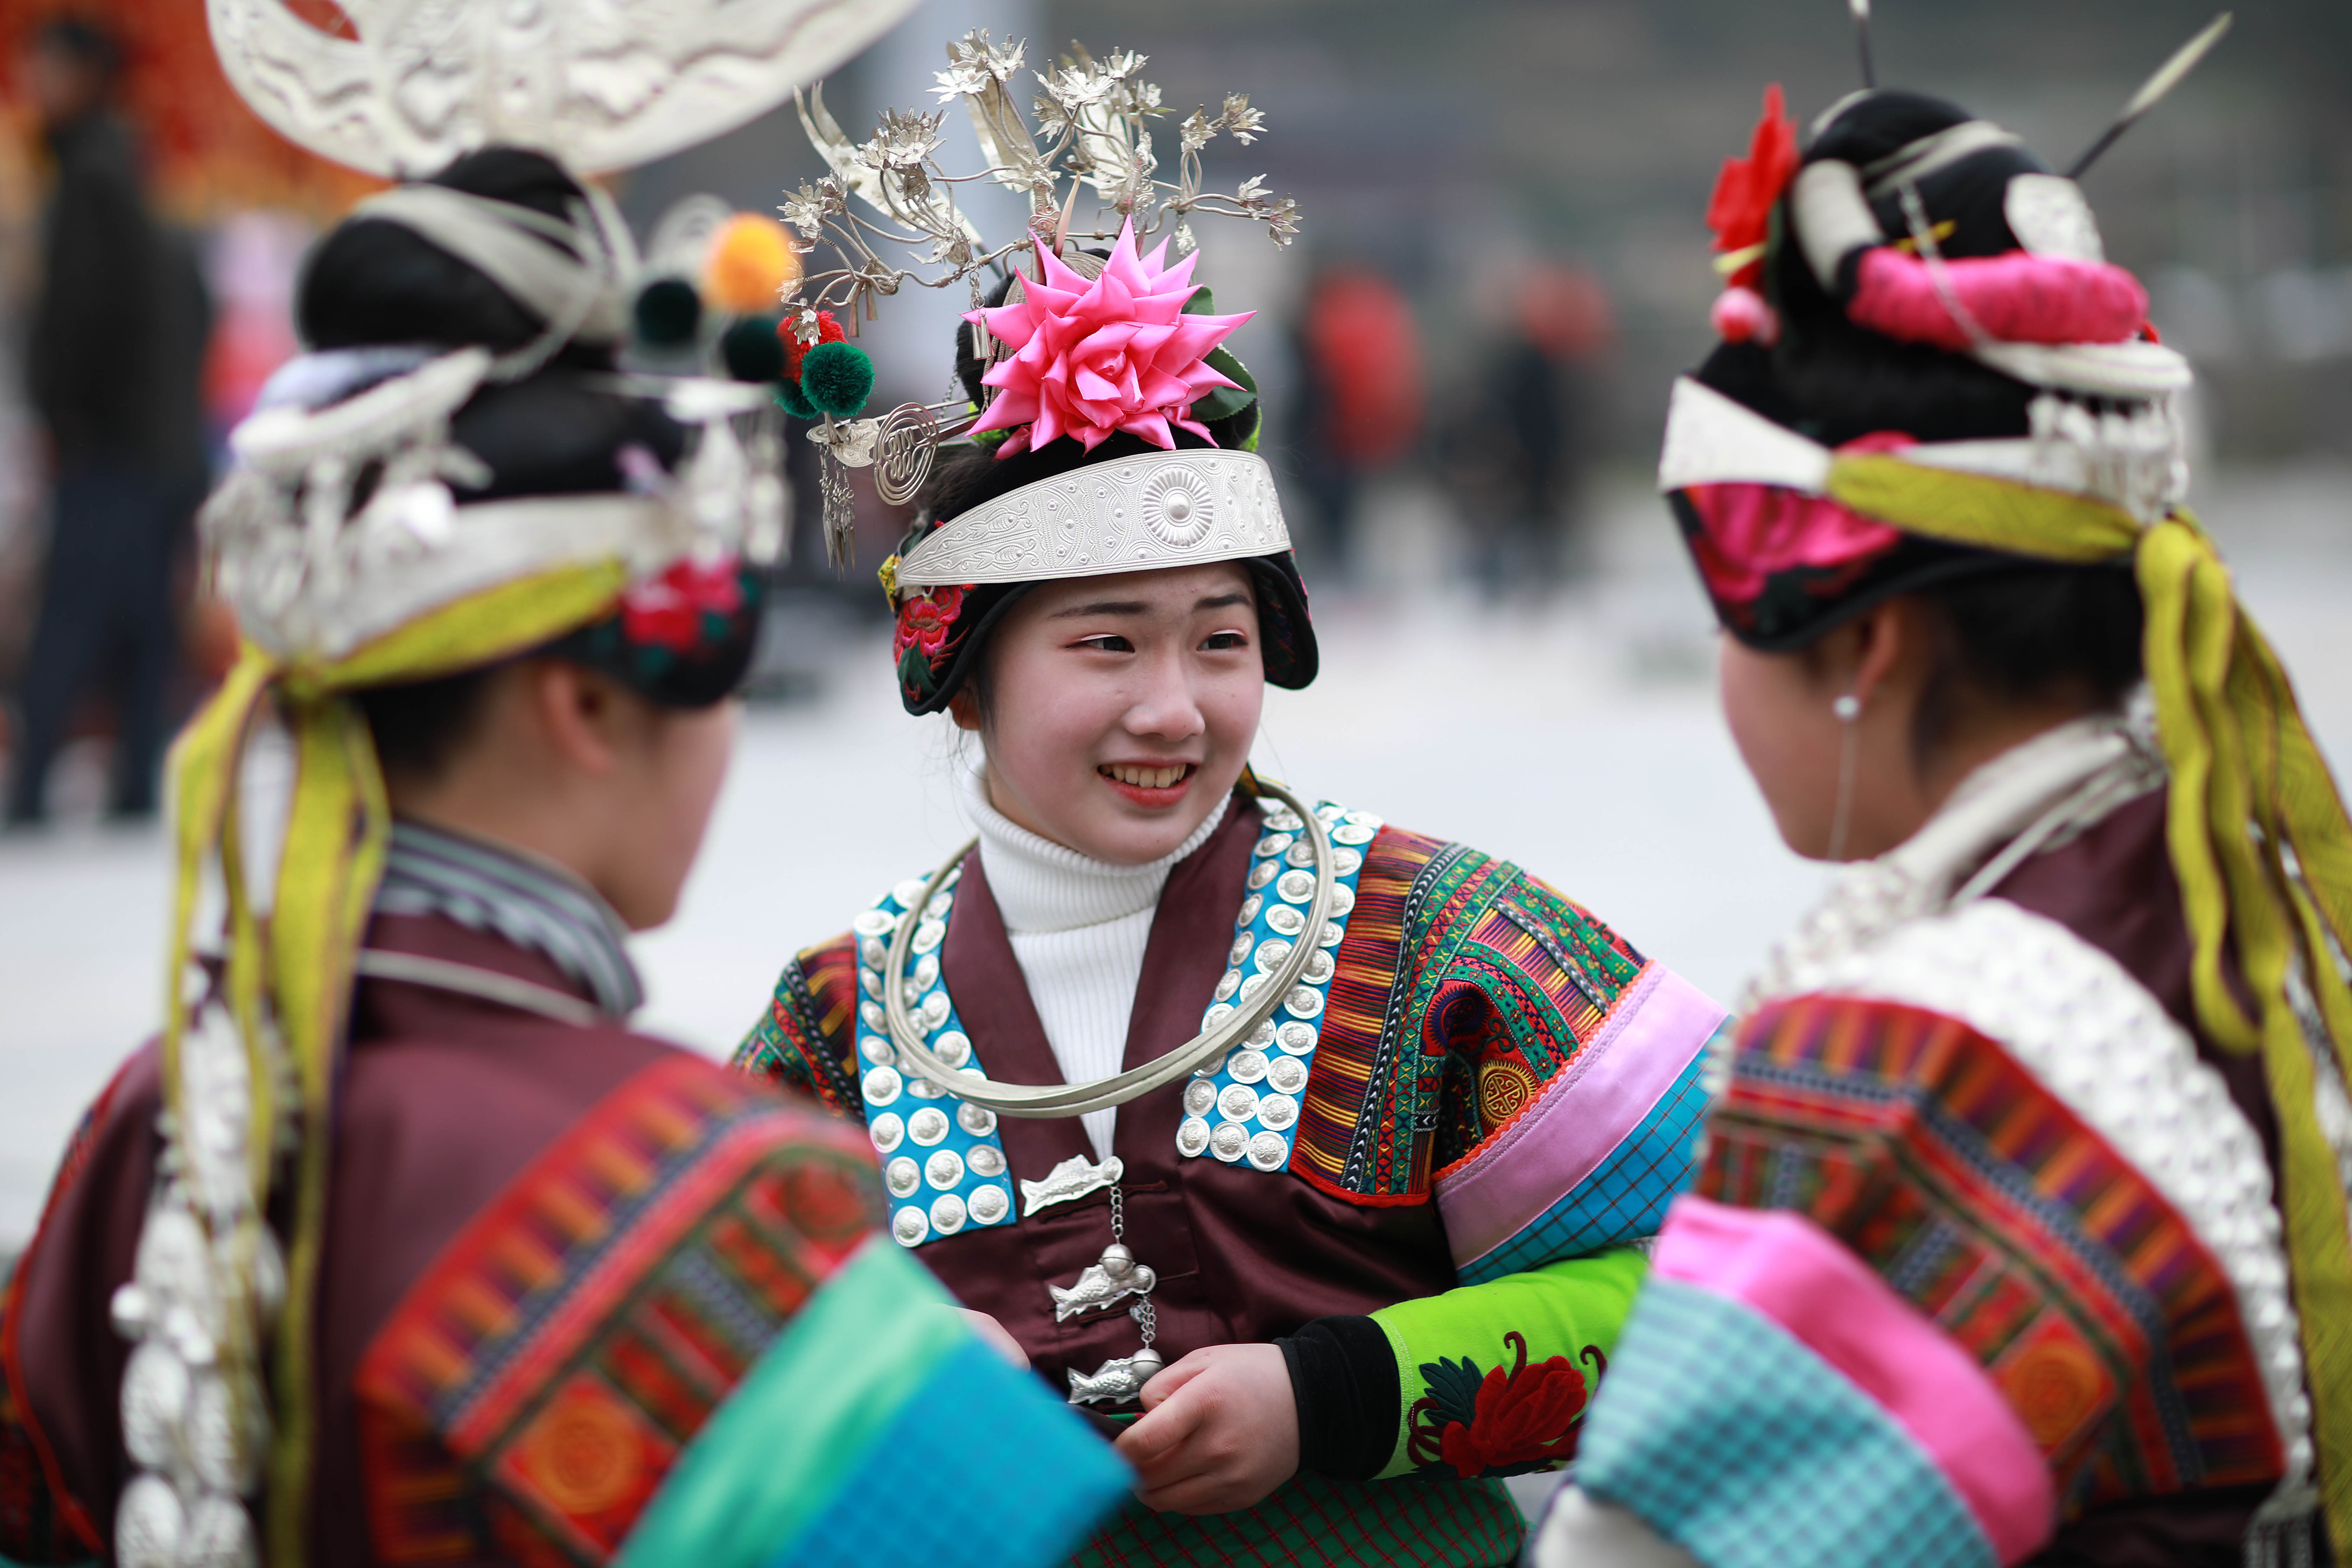 2月8日,在贵州省丹寨县南皋乡九门村迎春芦笙会上,一名女孩在帮同伴戴